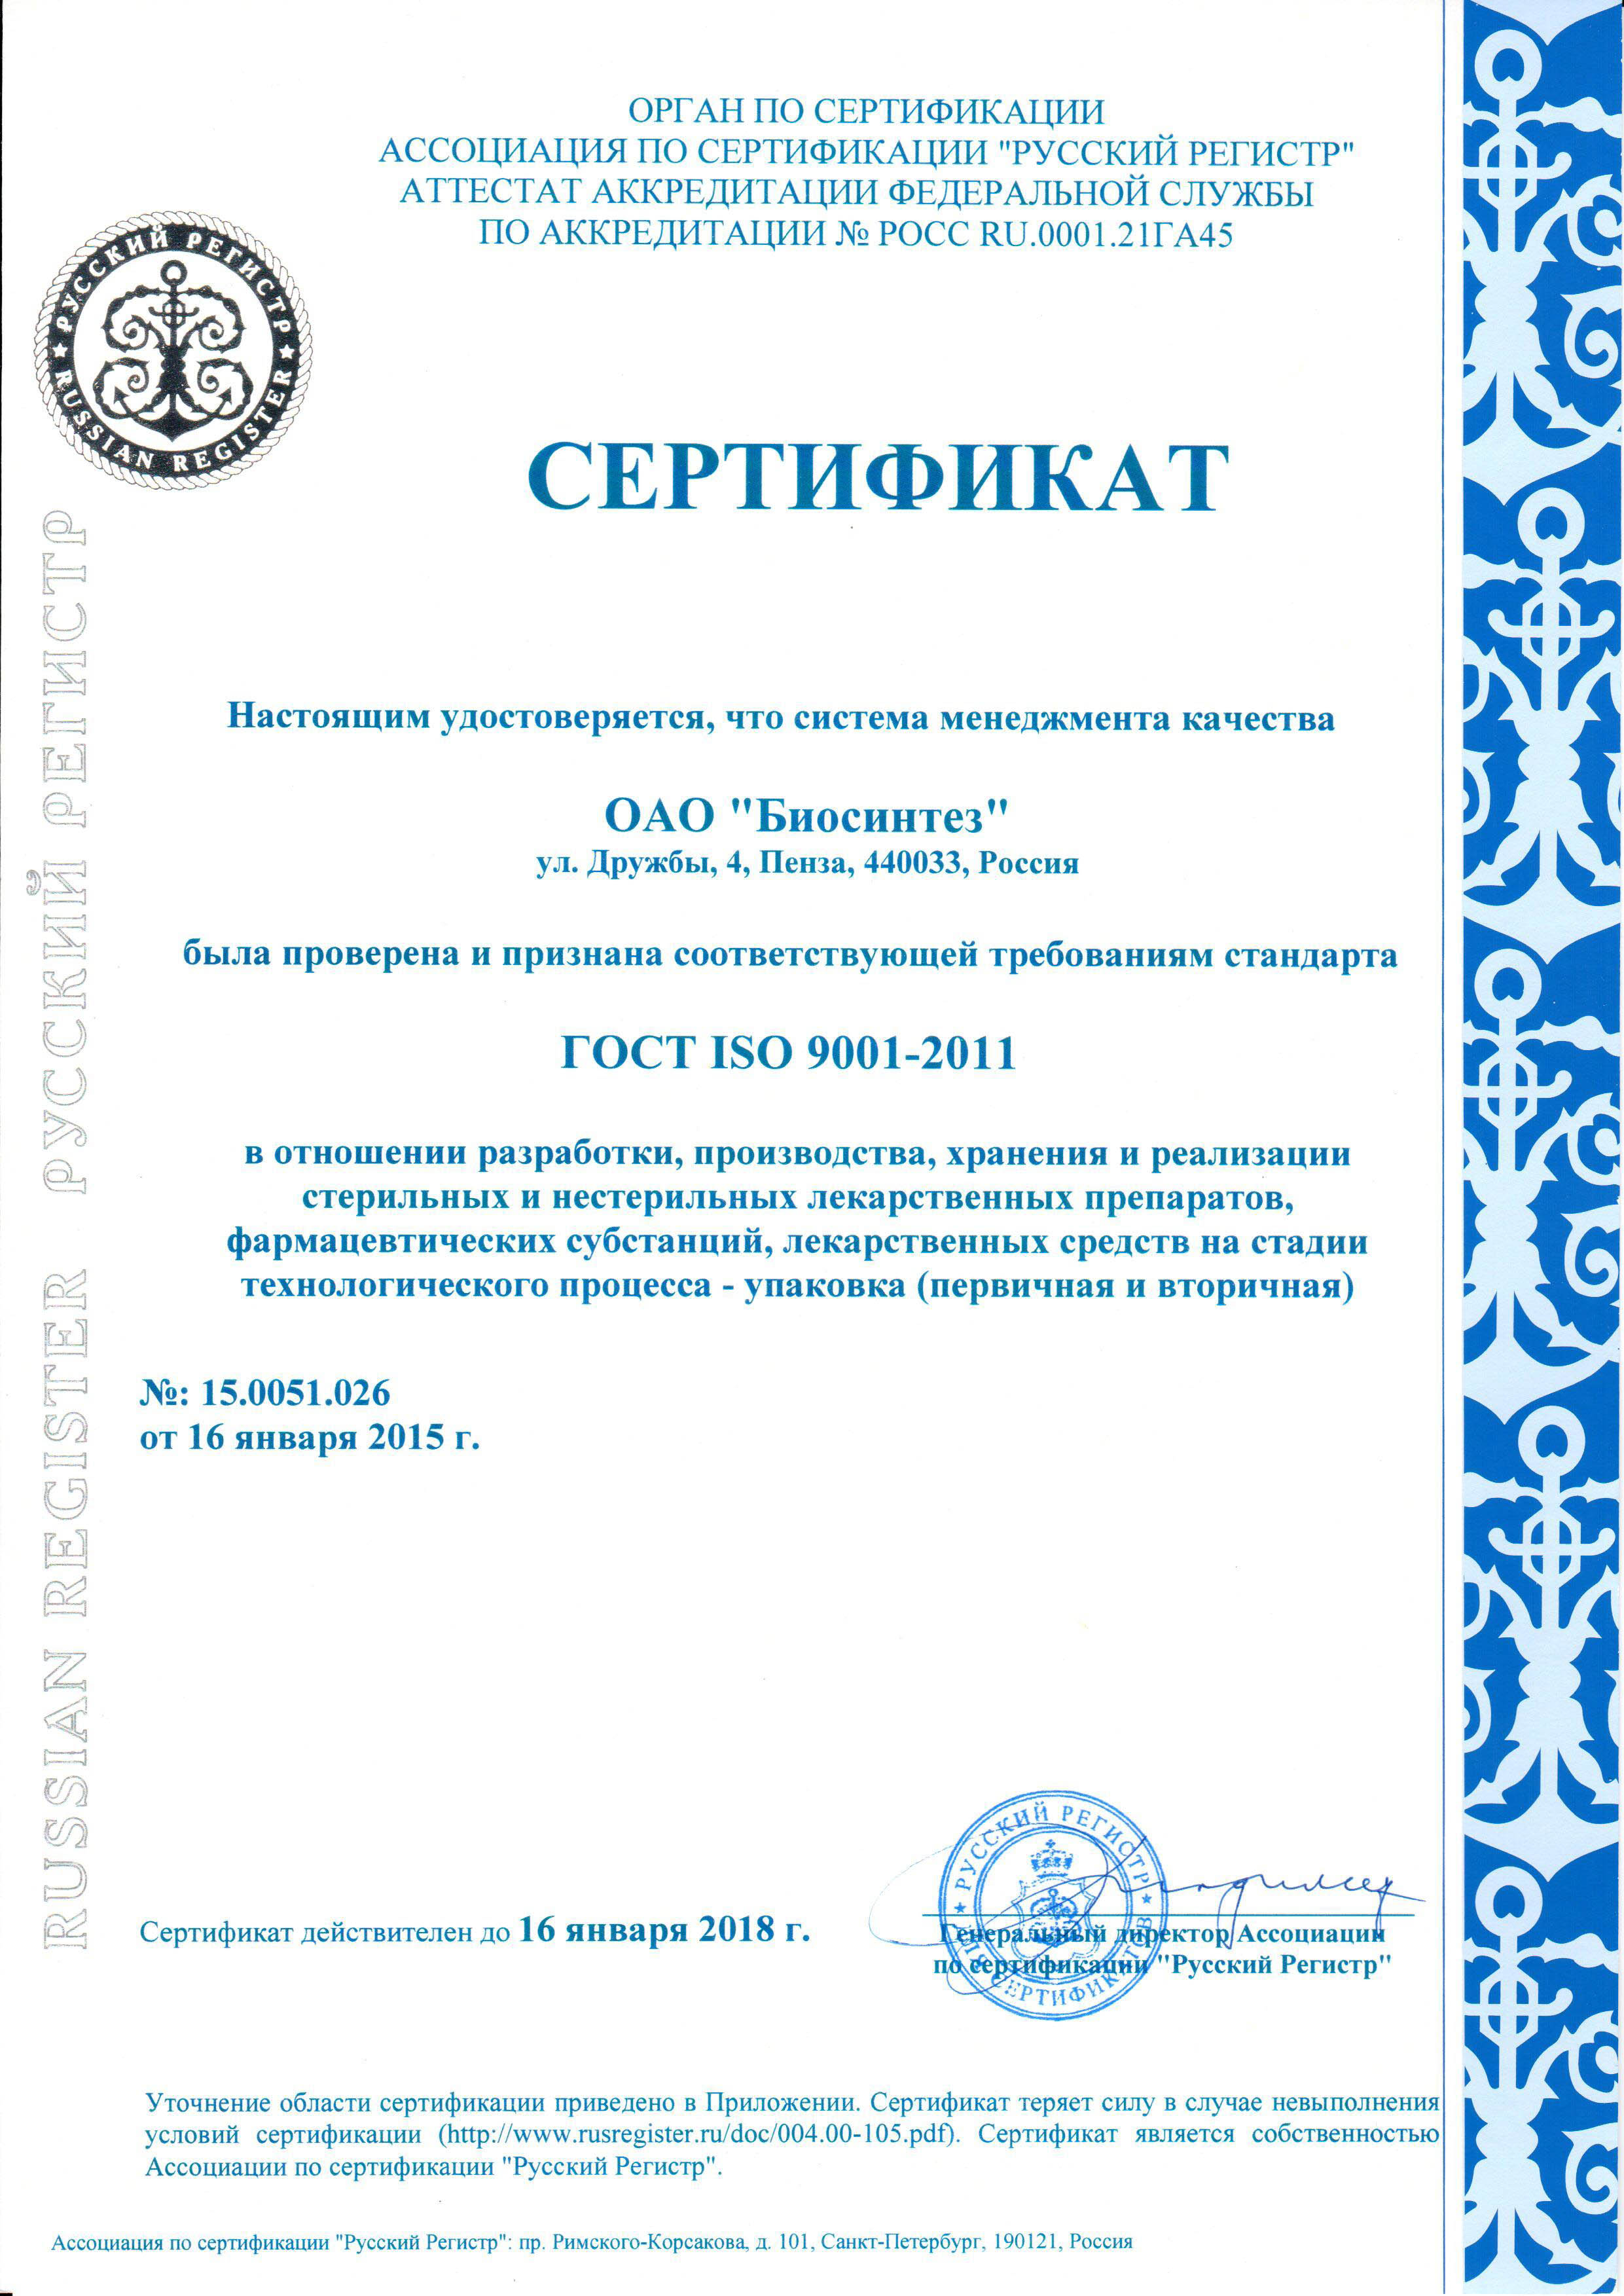 Сертификация лекарственных средств